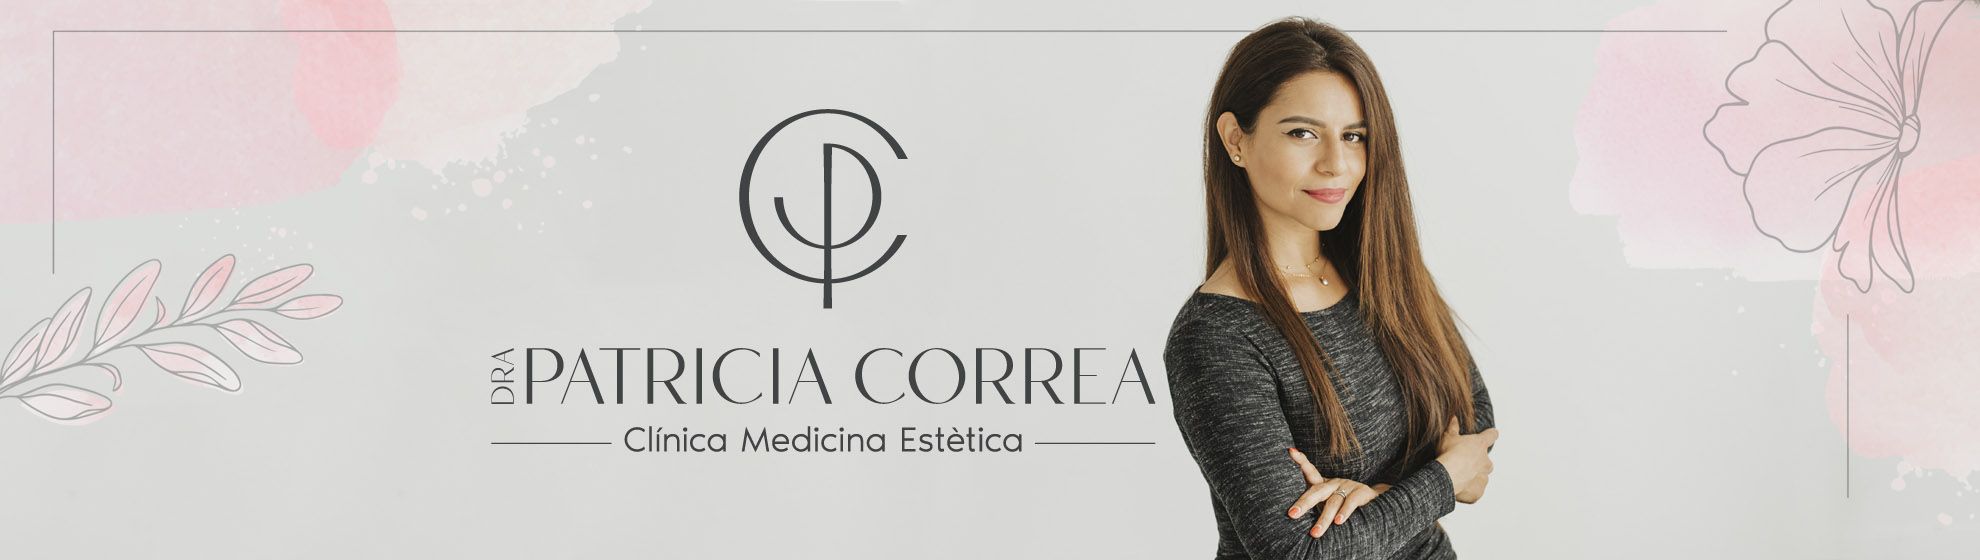 Dra. Patricia Correa